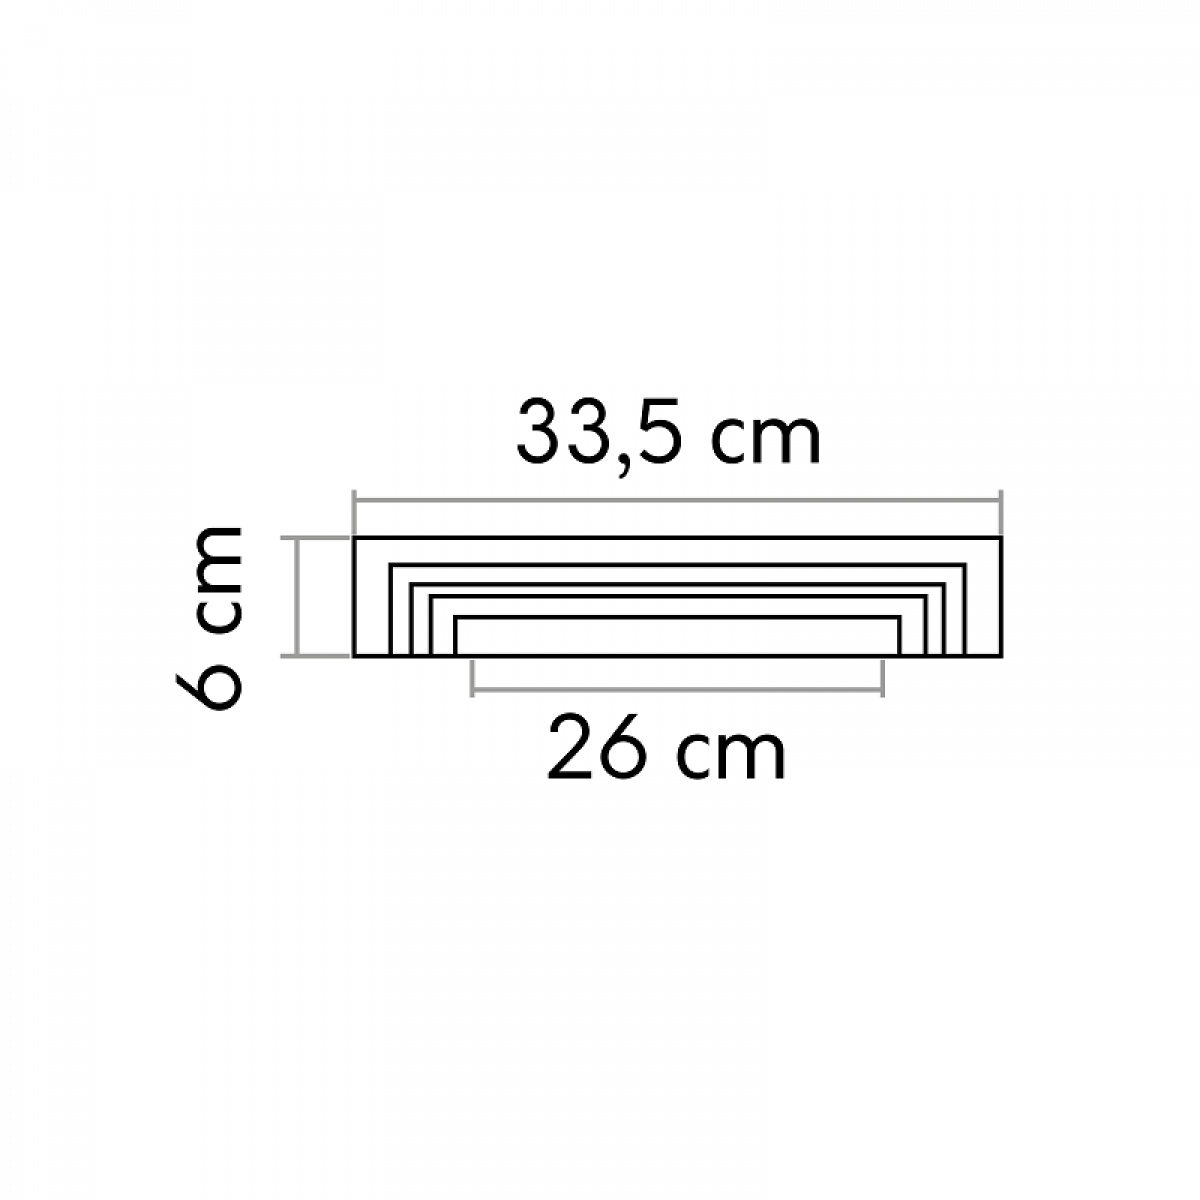 Element decorativ D3024, 15.8 x 33.5 x 6 cm, Mardom Decor, Coloane si semicoloane 